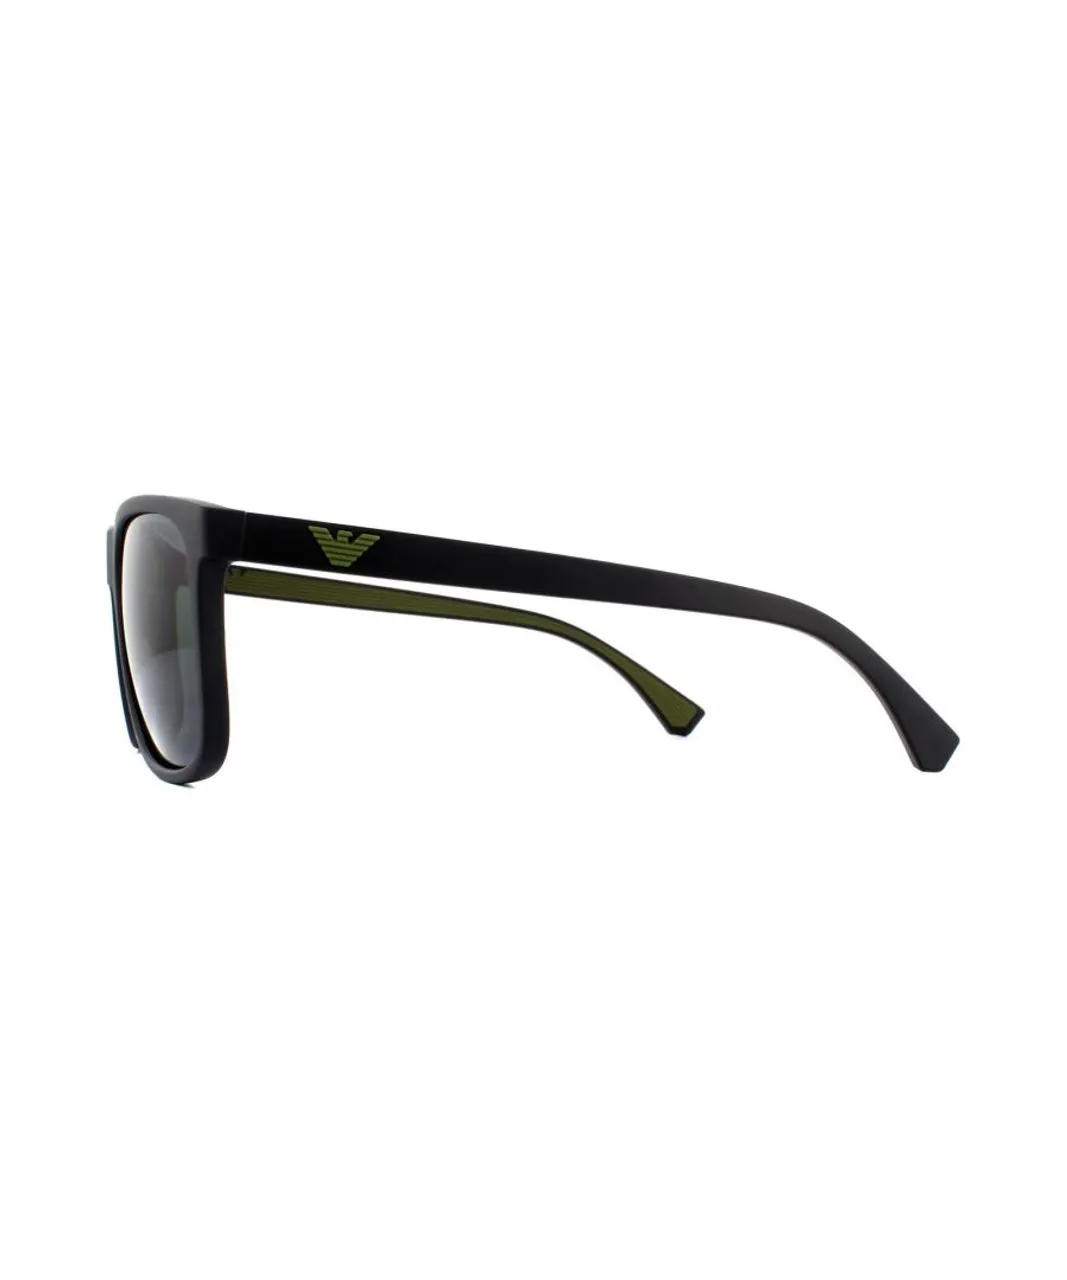 Emporio Armani Mens Sunglasses EA4129 504287 Matte Black Grey Gradient - One